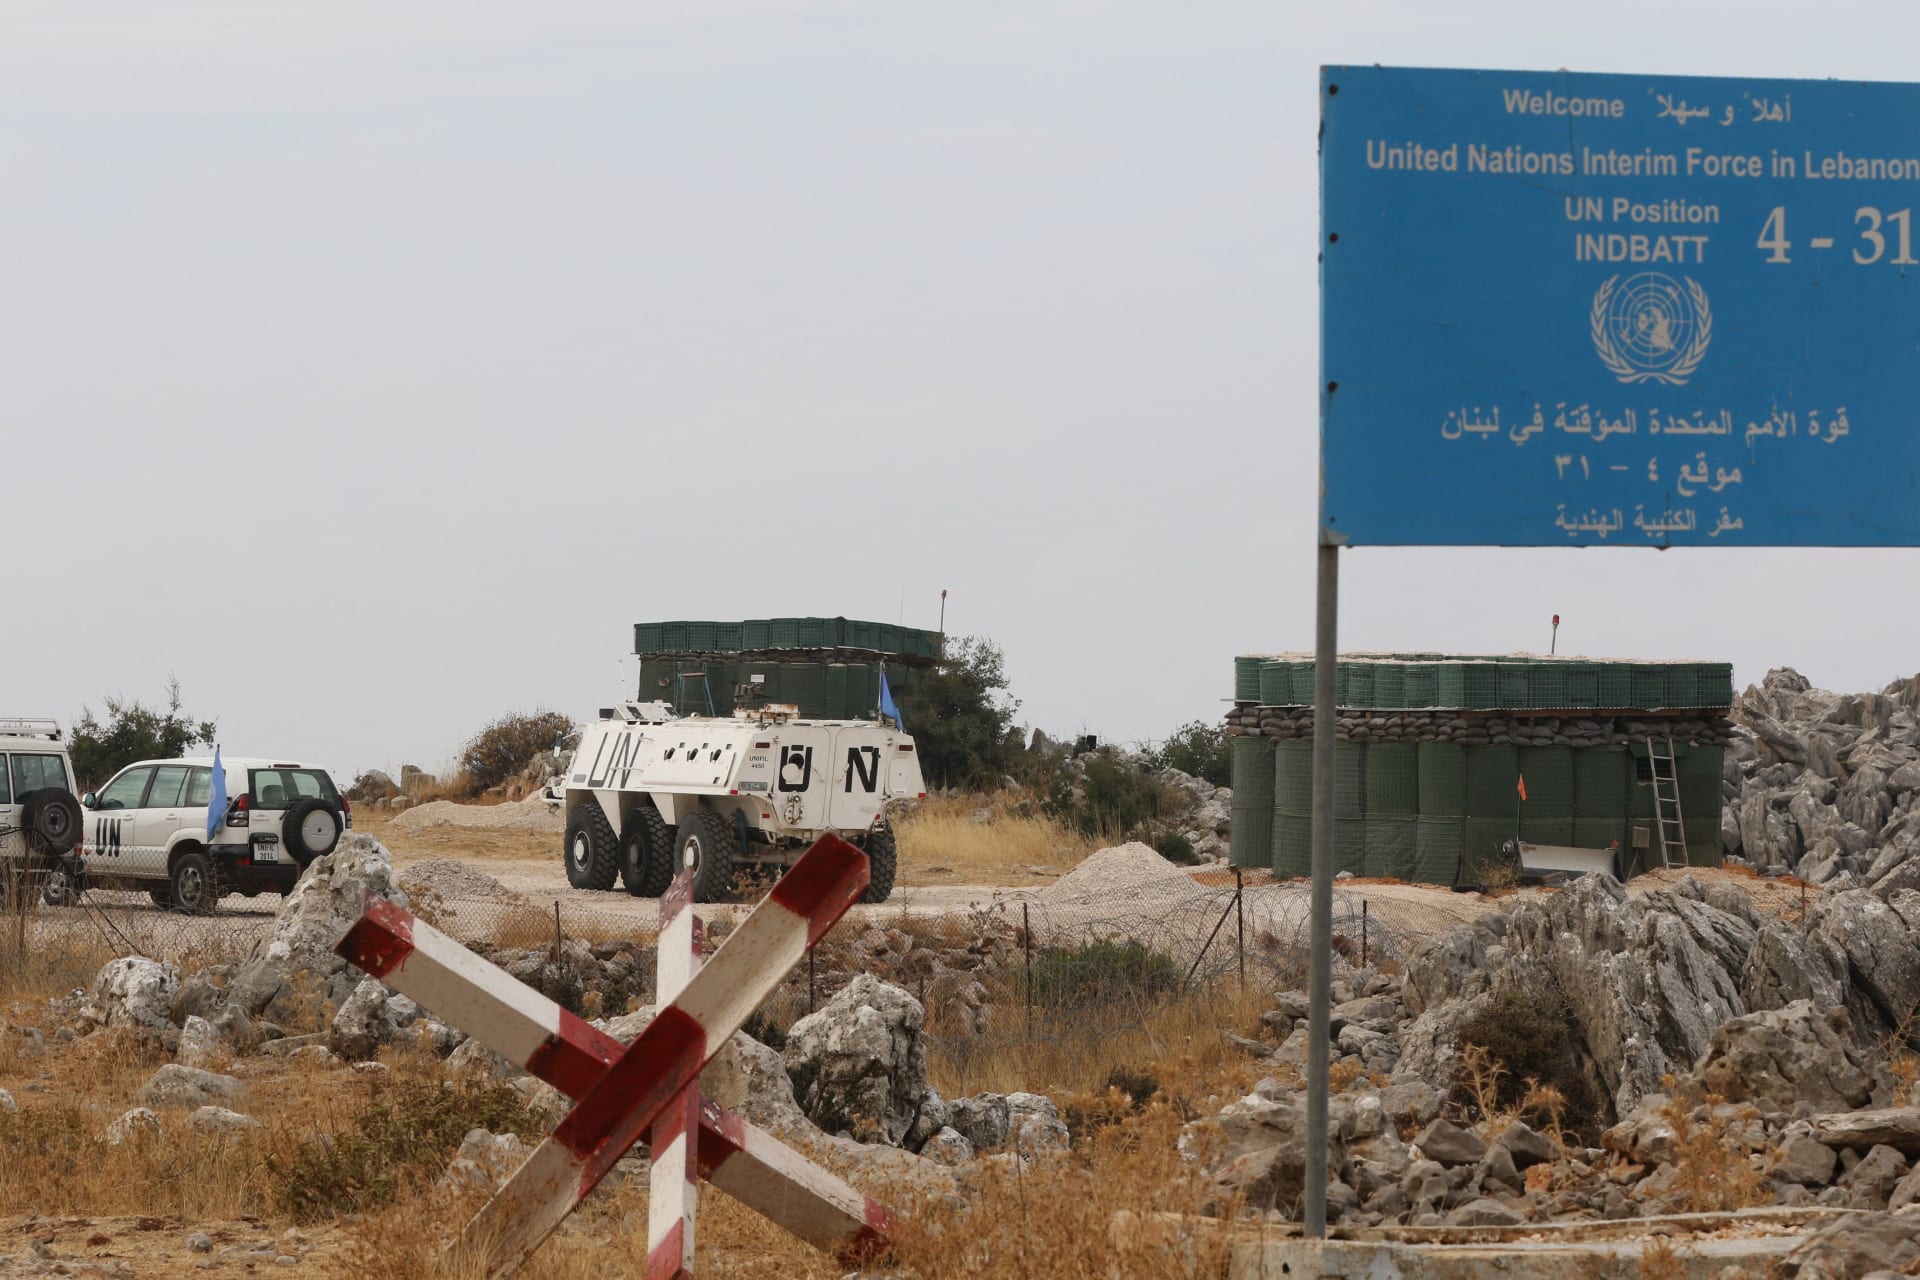 ركبات تابعة لقوات الأمم المتحدة المؤقتة في لبنان (اليونيفيل) متوقفة في نطاق قرية كفرشوبا بجنوب لبنان على الحدود مع إسرائيل في 8 أكتوبر 2023.